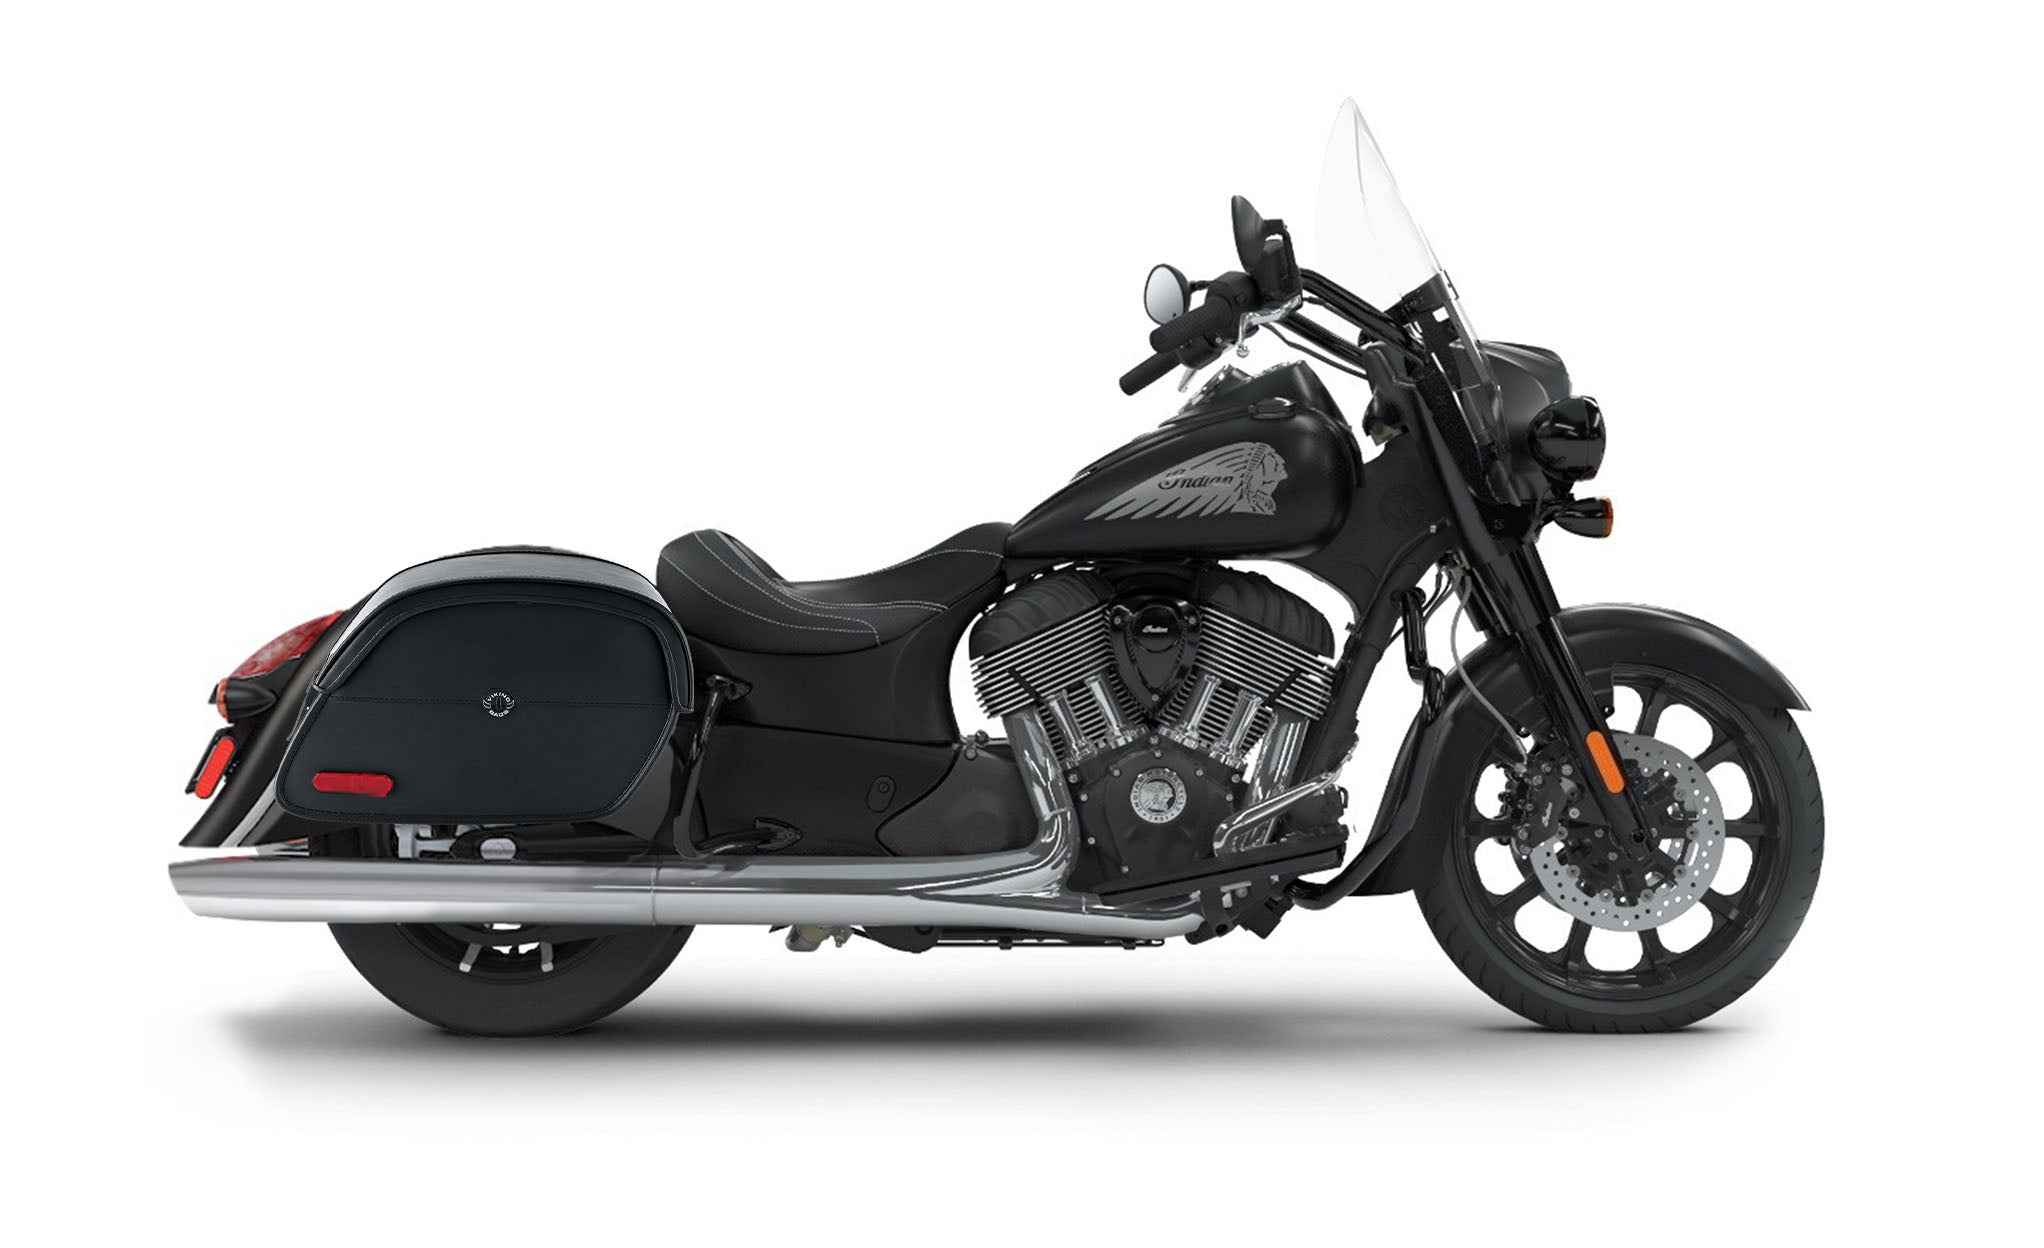 Viking California Large Indian Springfield Darkhorse Leather Motorcycle Saddlebags on Bike Photo @expand